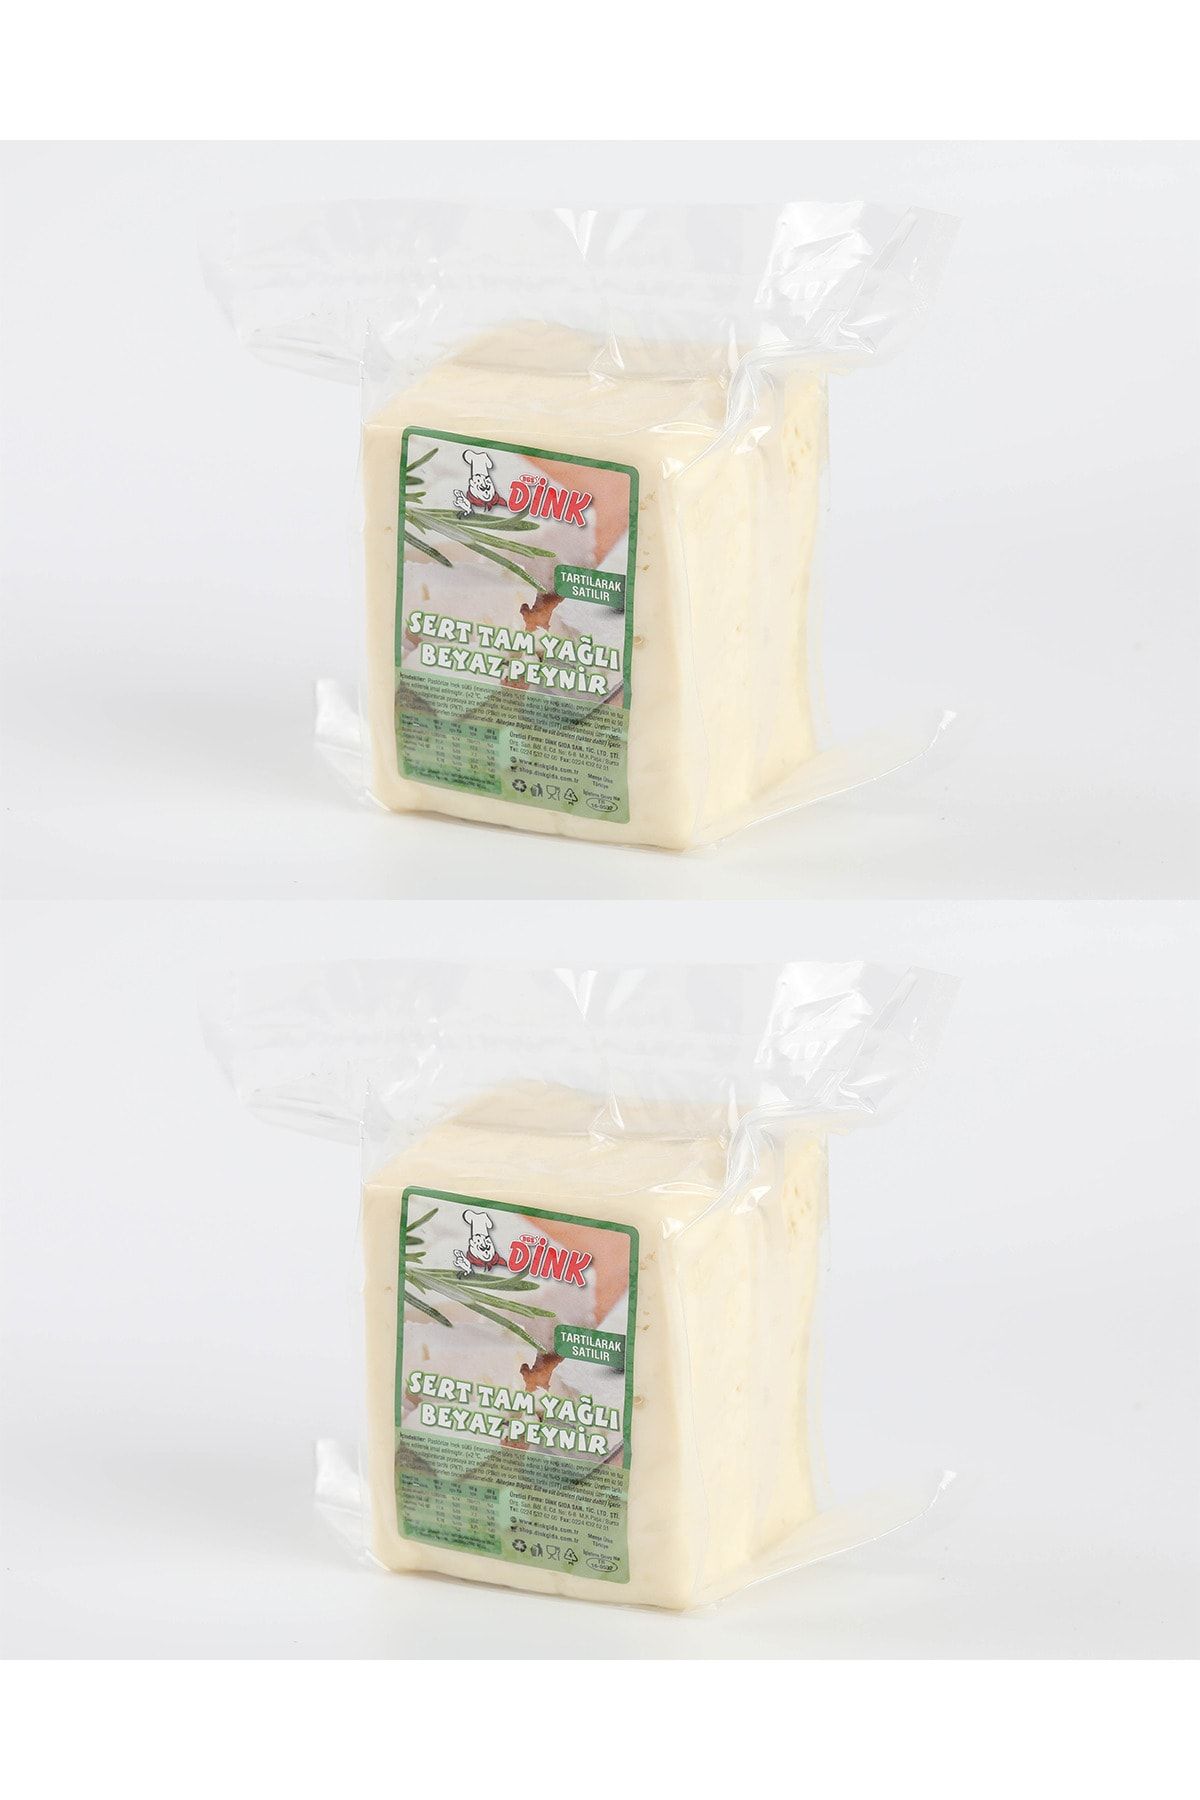 DİNK GIDA Tam Yağlı Klasik Olgunlaştırılmış Sert (EZİNE TİPİ) Beyaz Peynir 500g. - Şirden Mayalı 2 Li Paket